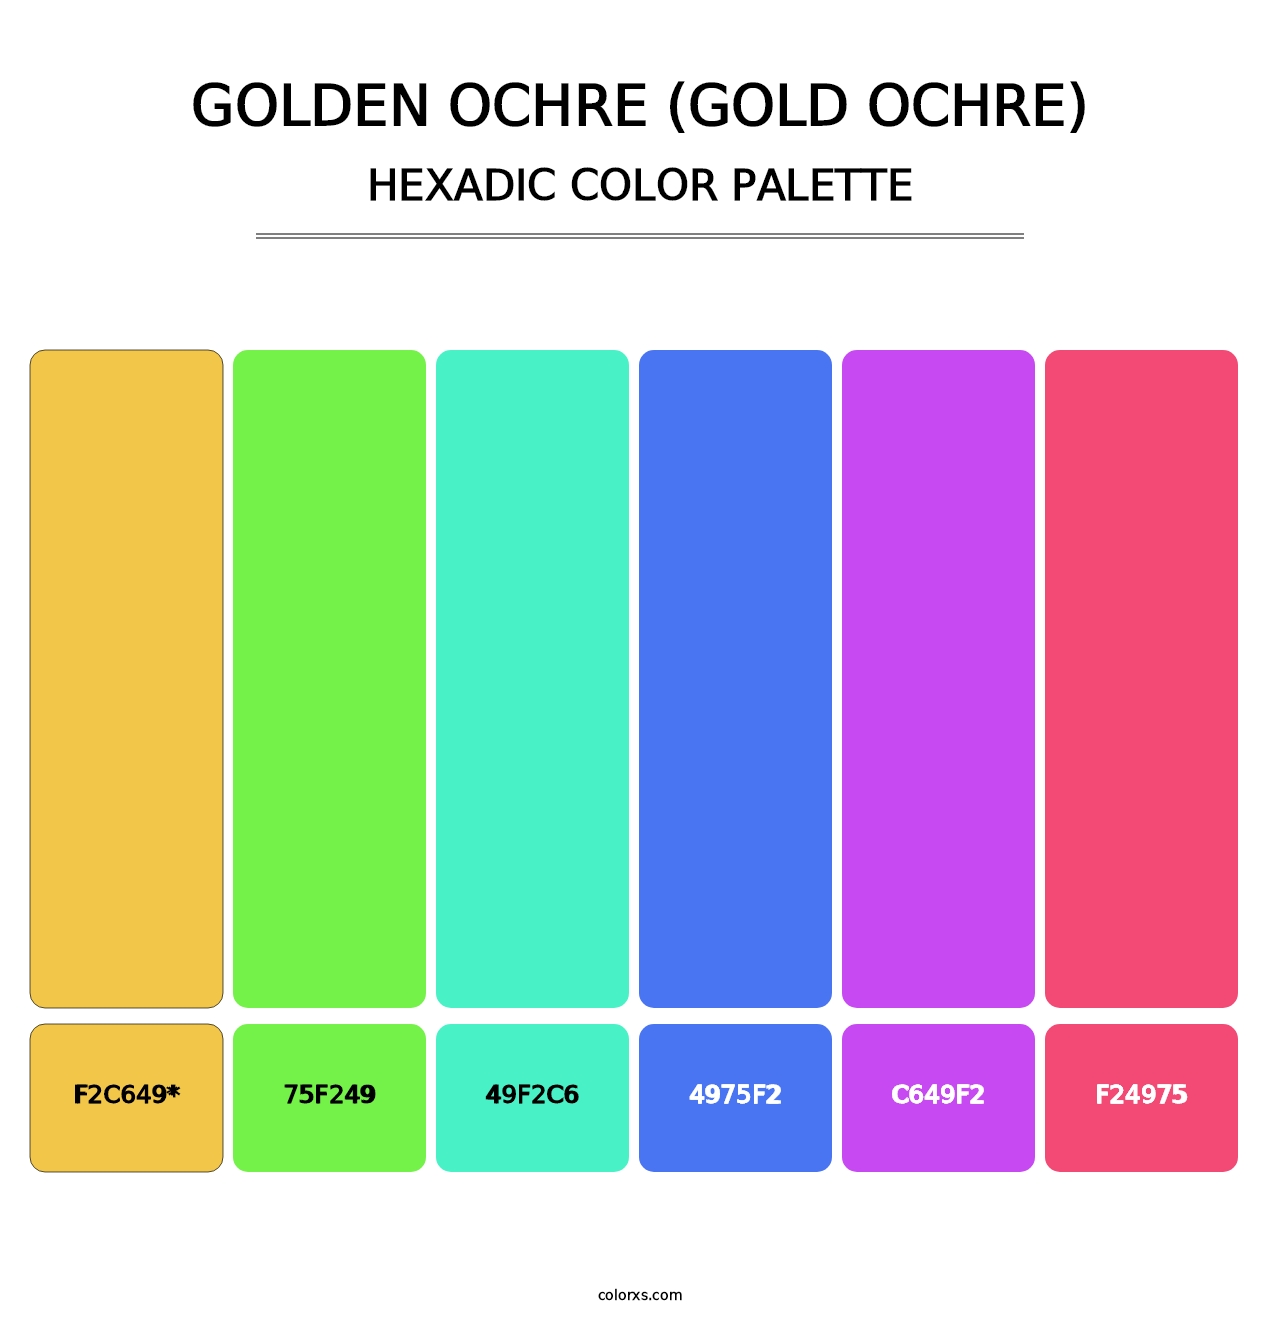 Golden Ochre (Gold Ochre) - Hexadic Color Palette